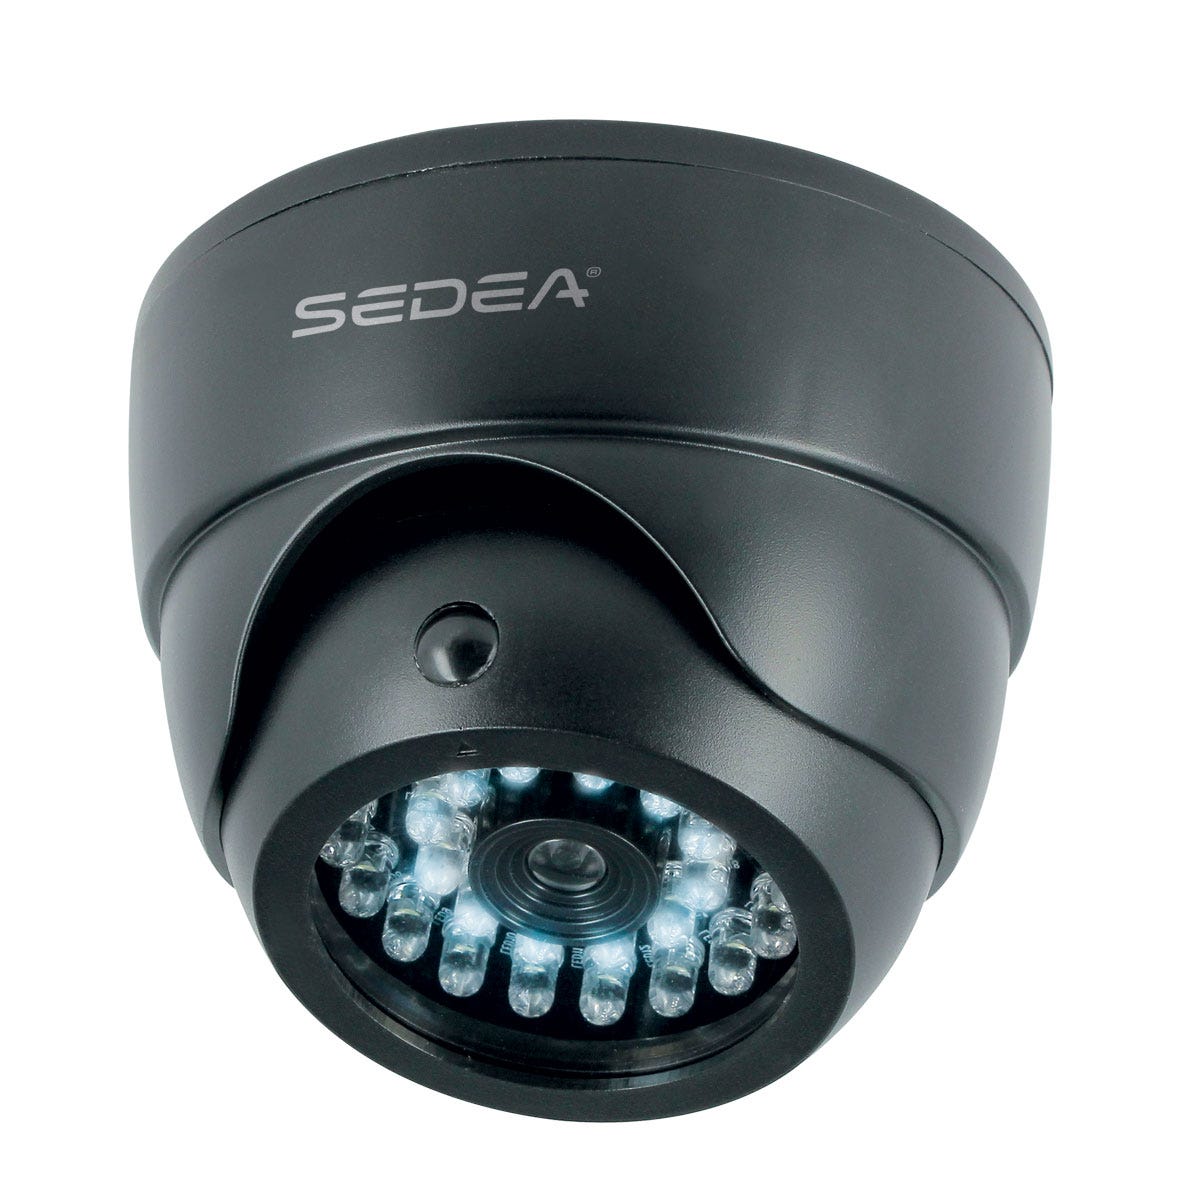 Caméra de surveillance factice type dôme avec fonction éclairage - SEDEA - 550985 0